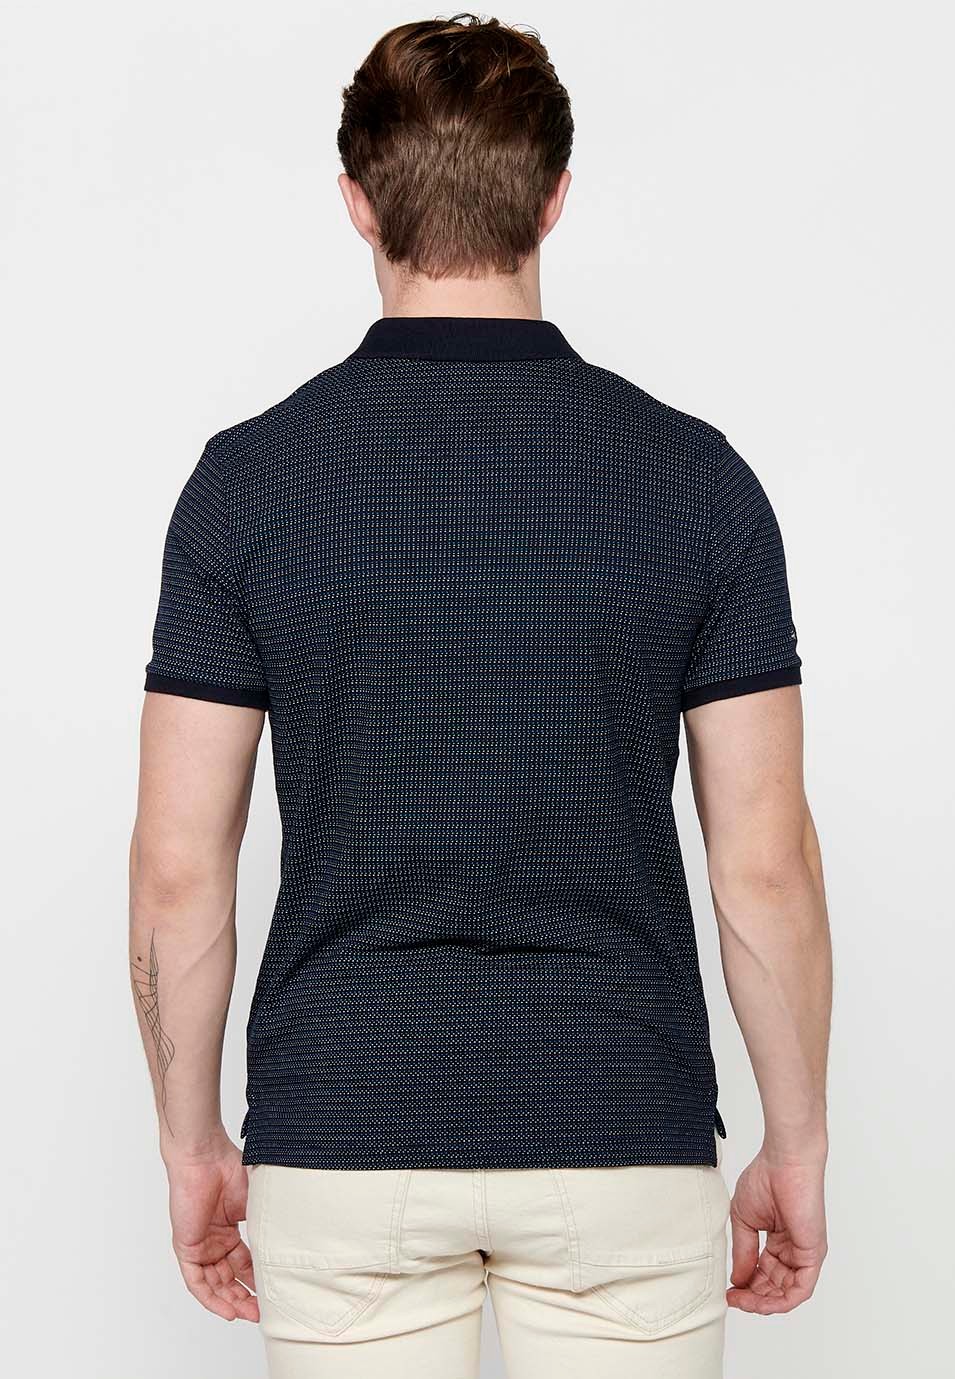 Kurzärmliges Baumwoll-Poloshirt mit geripptem Finish und geknöpftem Hemdkragen mit bedrucktem Stoff und Seitenschlitzen von Navy für Herren